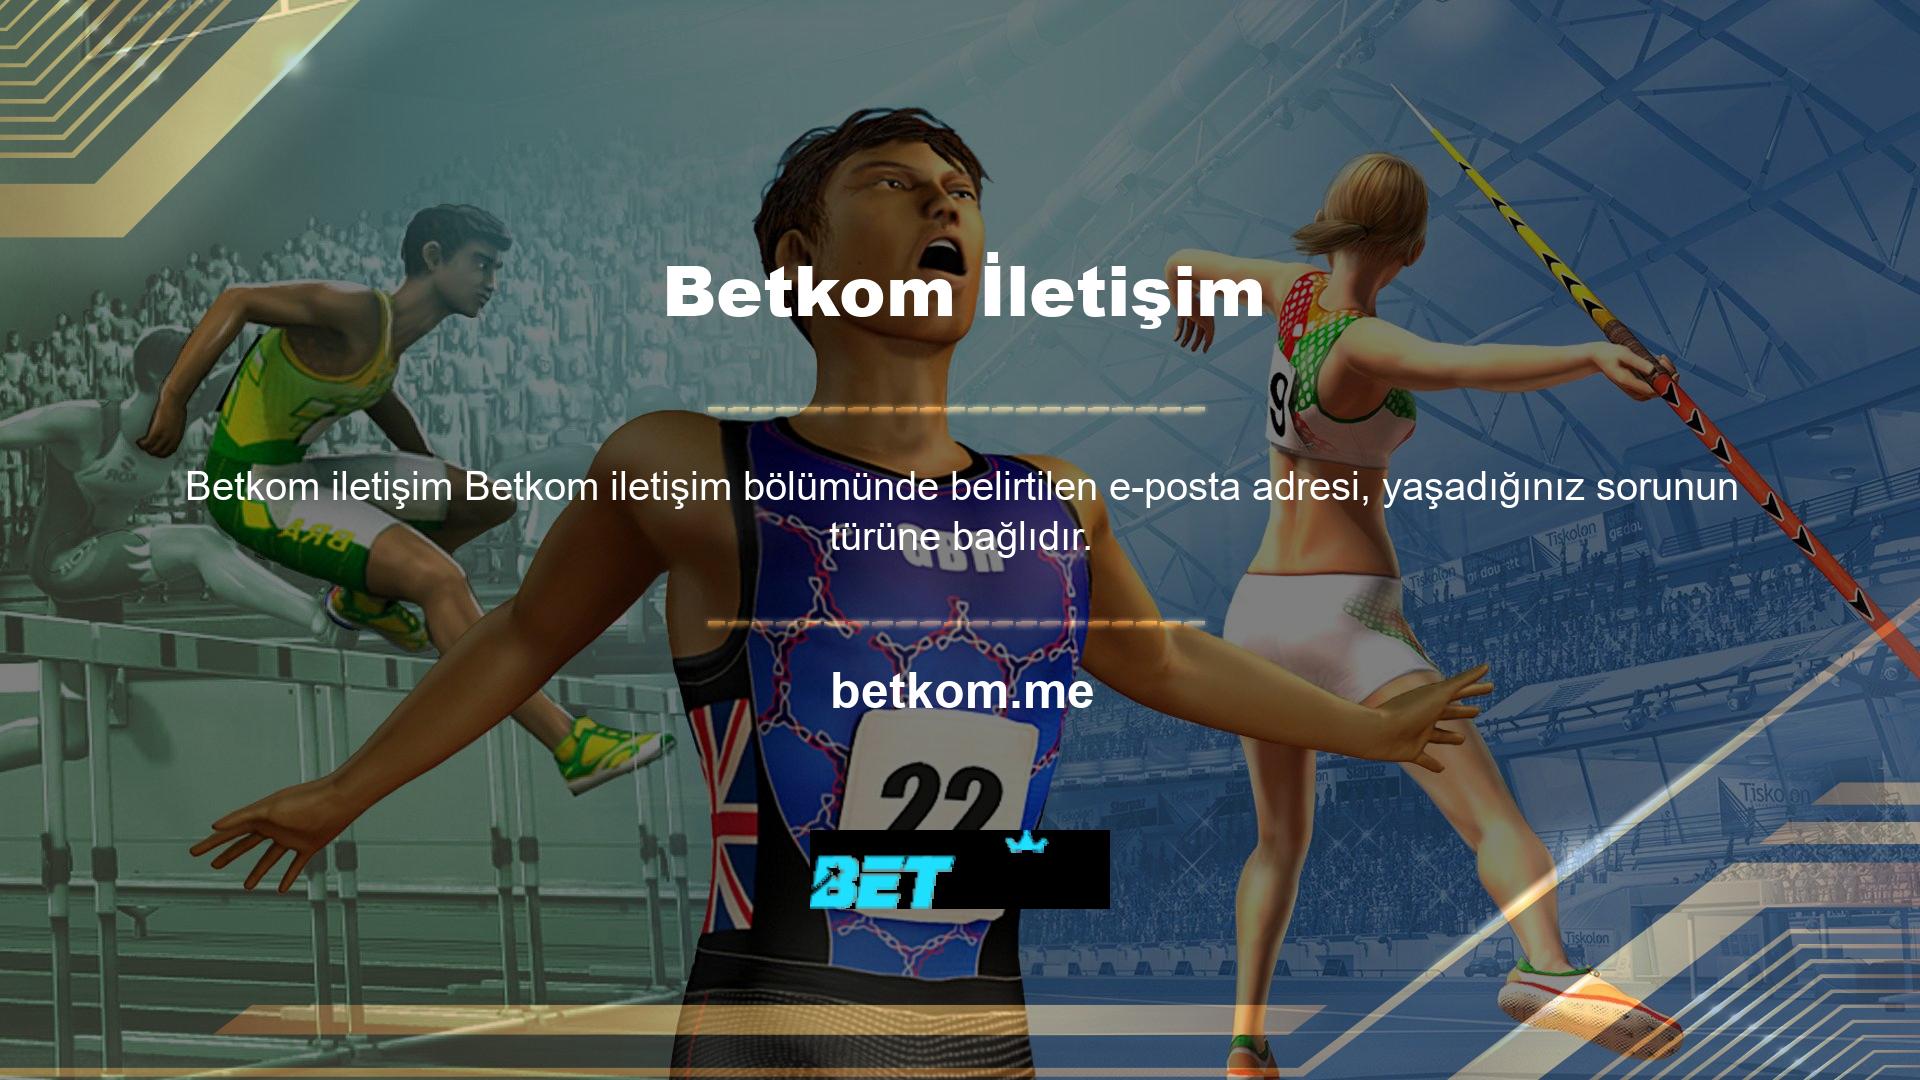 Genel bilgi, destek talepleri ve bonuslar için lütfen Betkom ile iletişime geçin